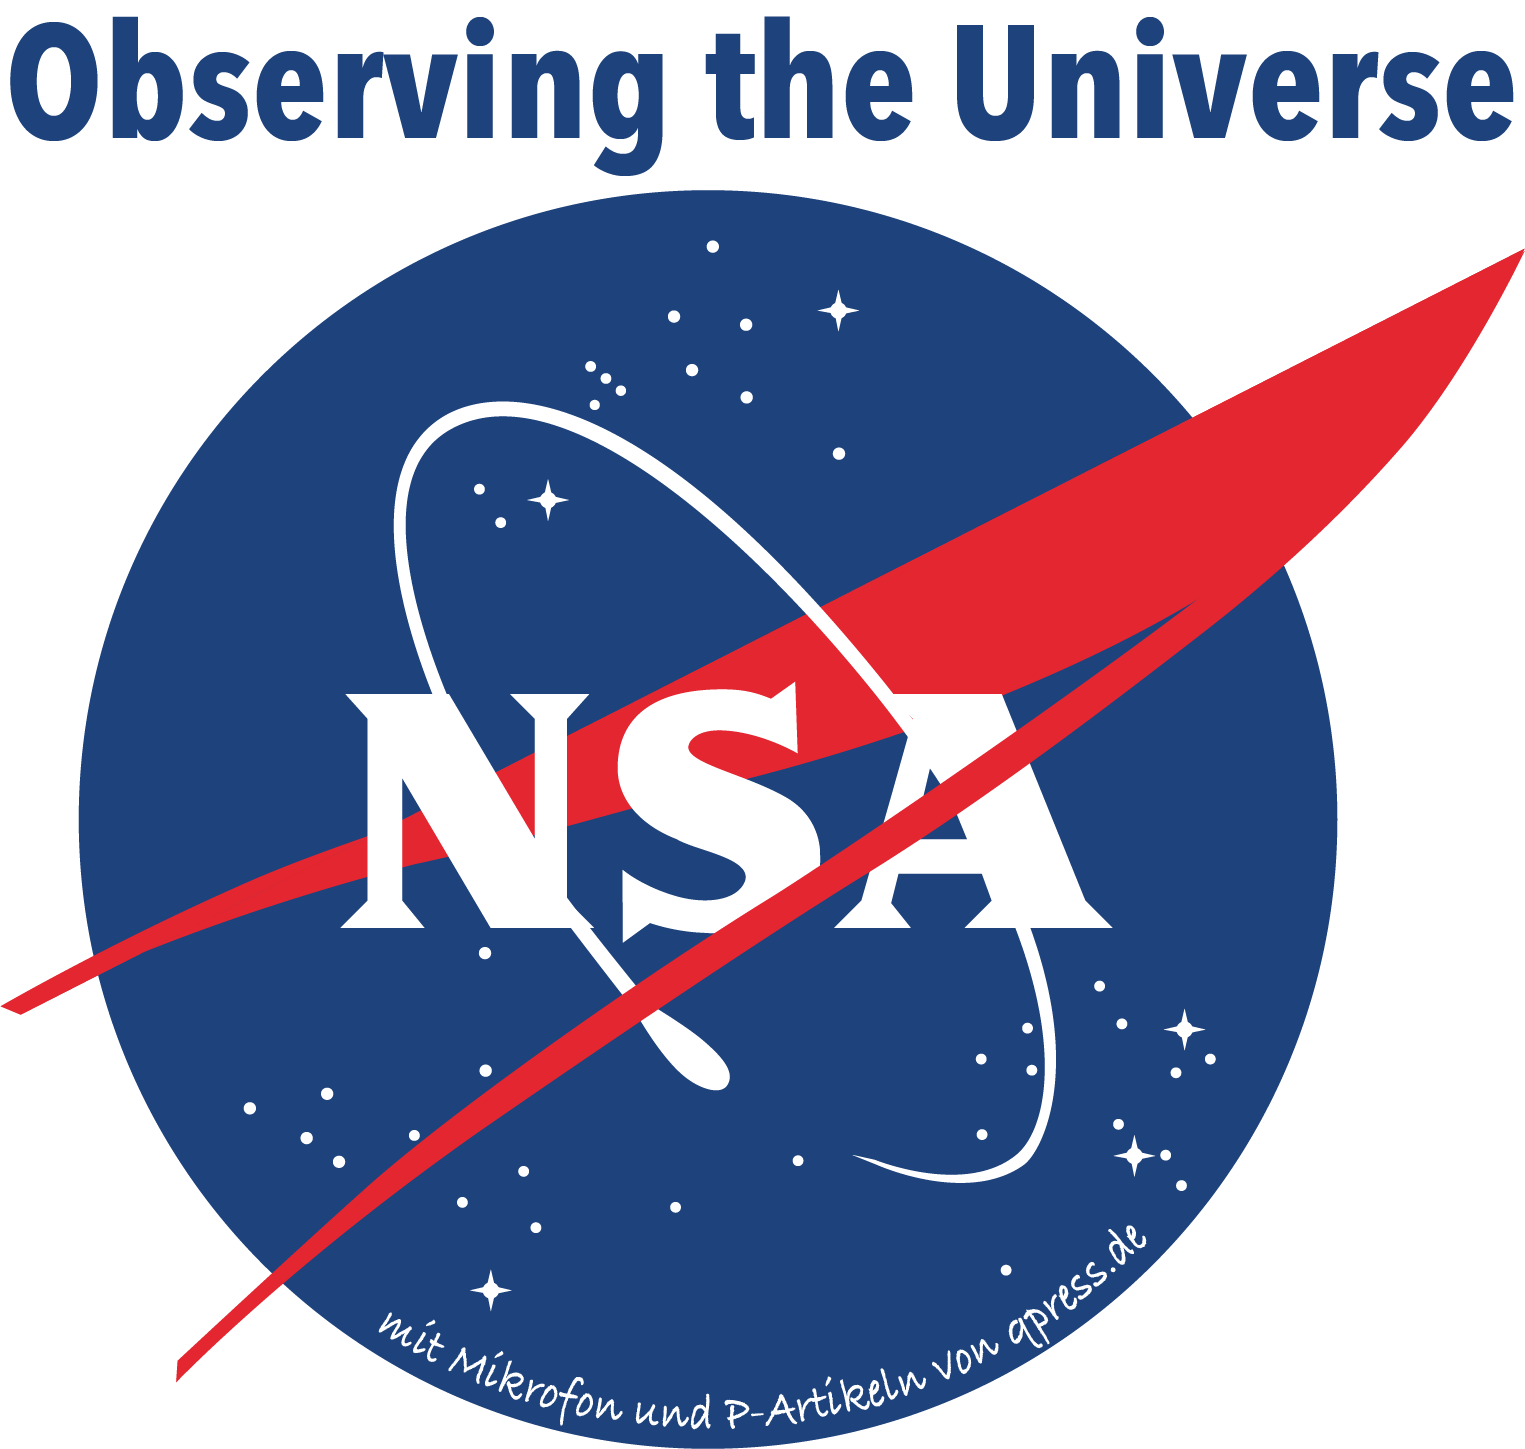 nasa_logo_nsa_listen_to_the_universe_werbung auf dem Mond totale ueberwachung